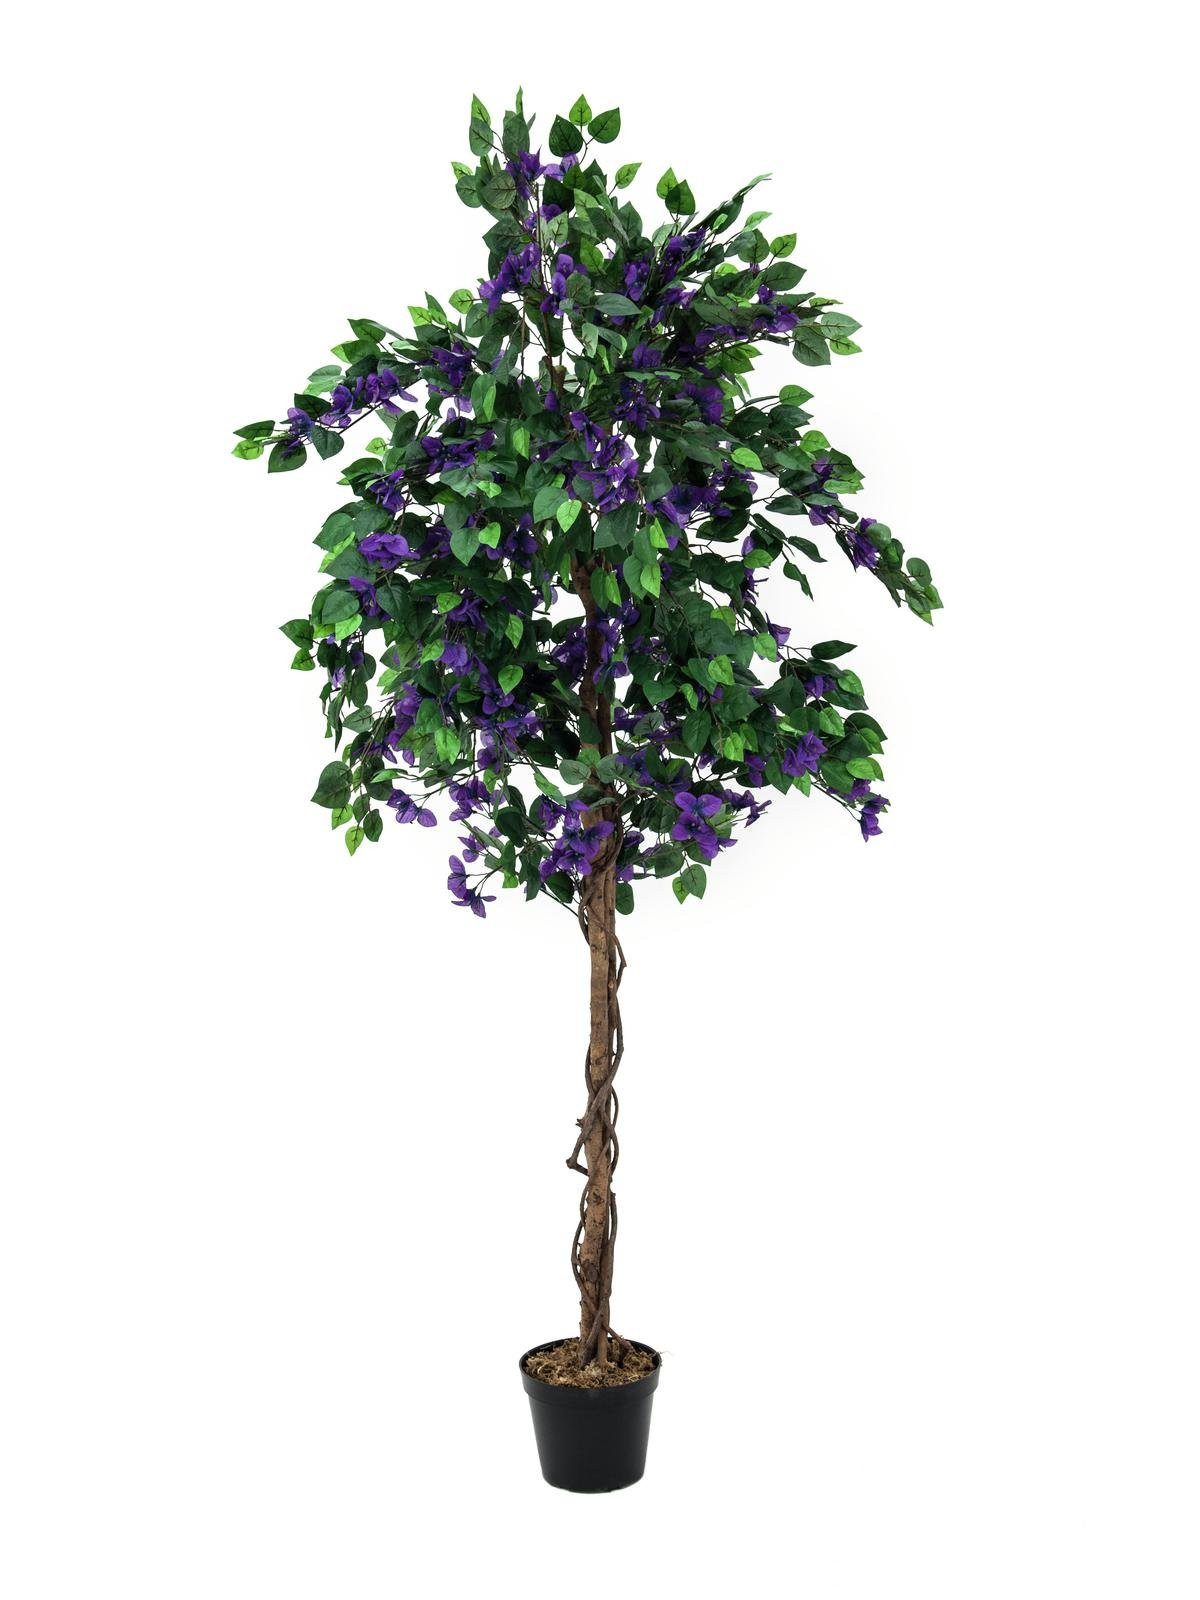 Kunstbaum Bougainvillea, 180cm, EUROPALMS, verschiedene Farben erhältlich